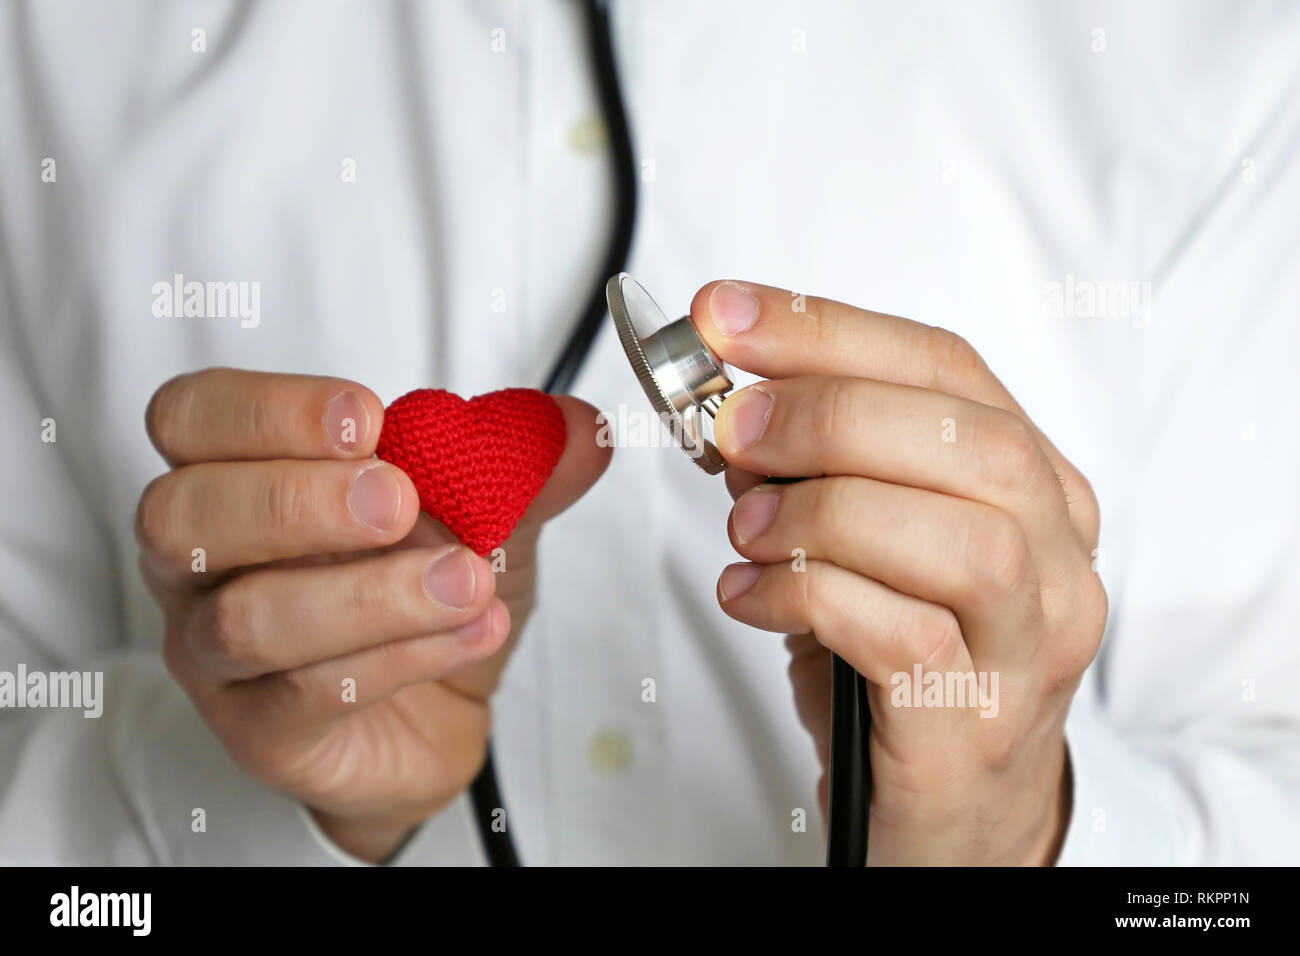 Doktor mit Stethoskop und Rot gestrickt Herz in der Hand. Konzept der Kardiologie, Herz Krankheiten, Diagnose, Auskultation, medizinische Untersuchung Stockfoto